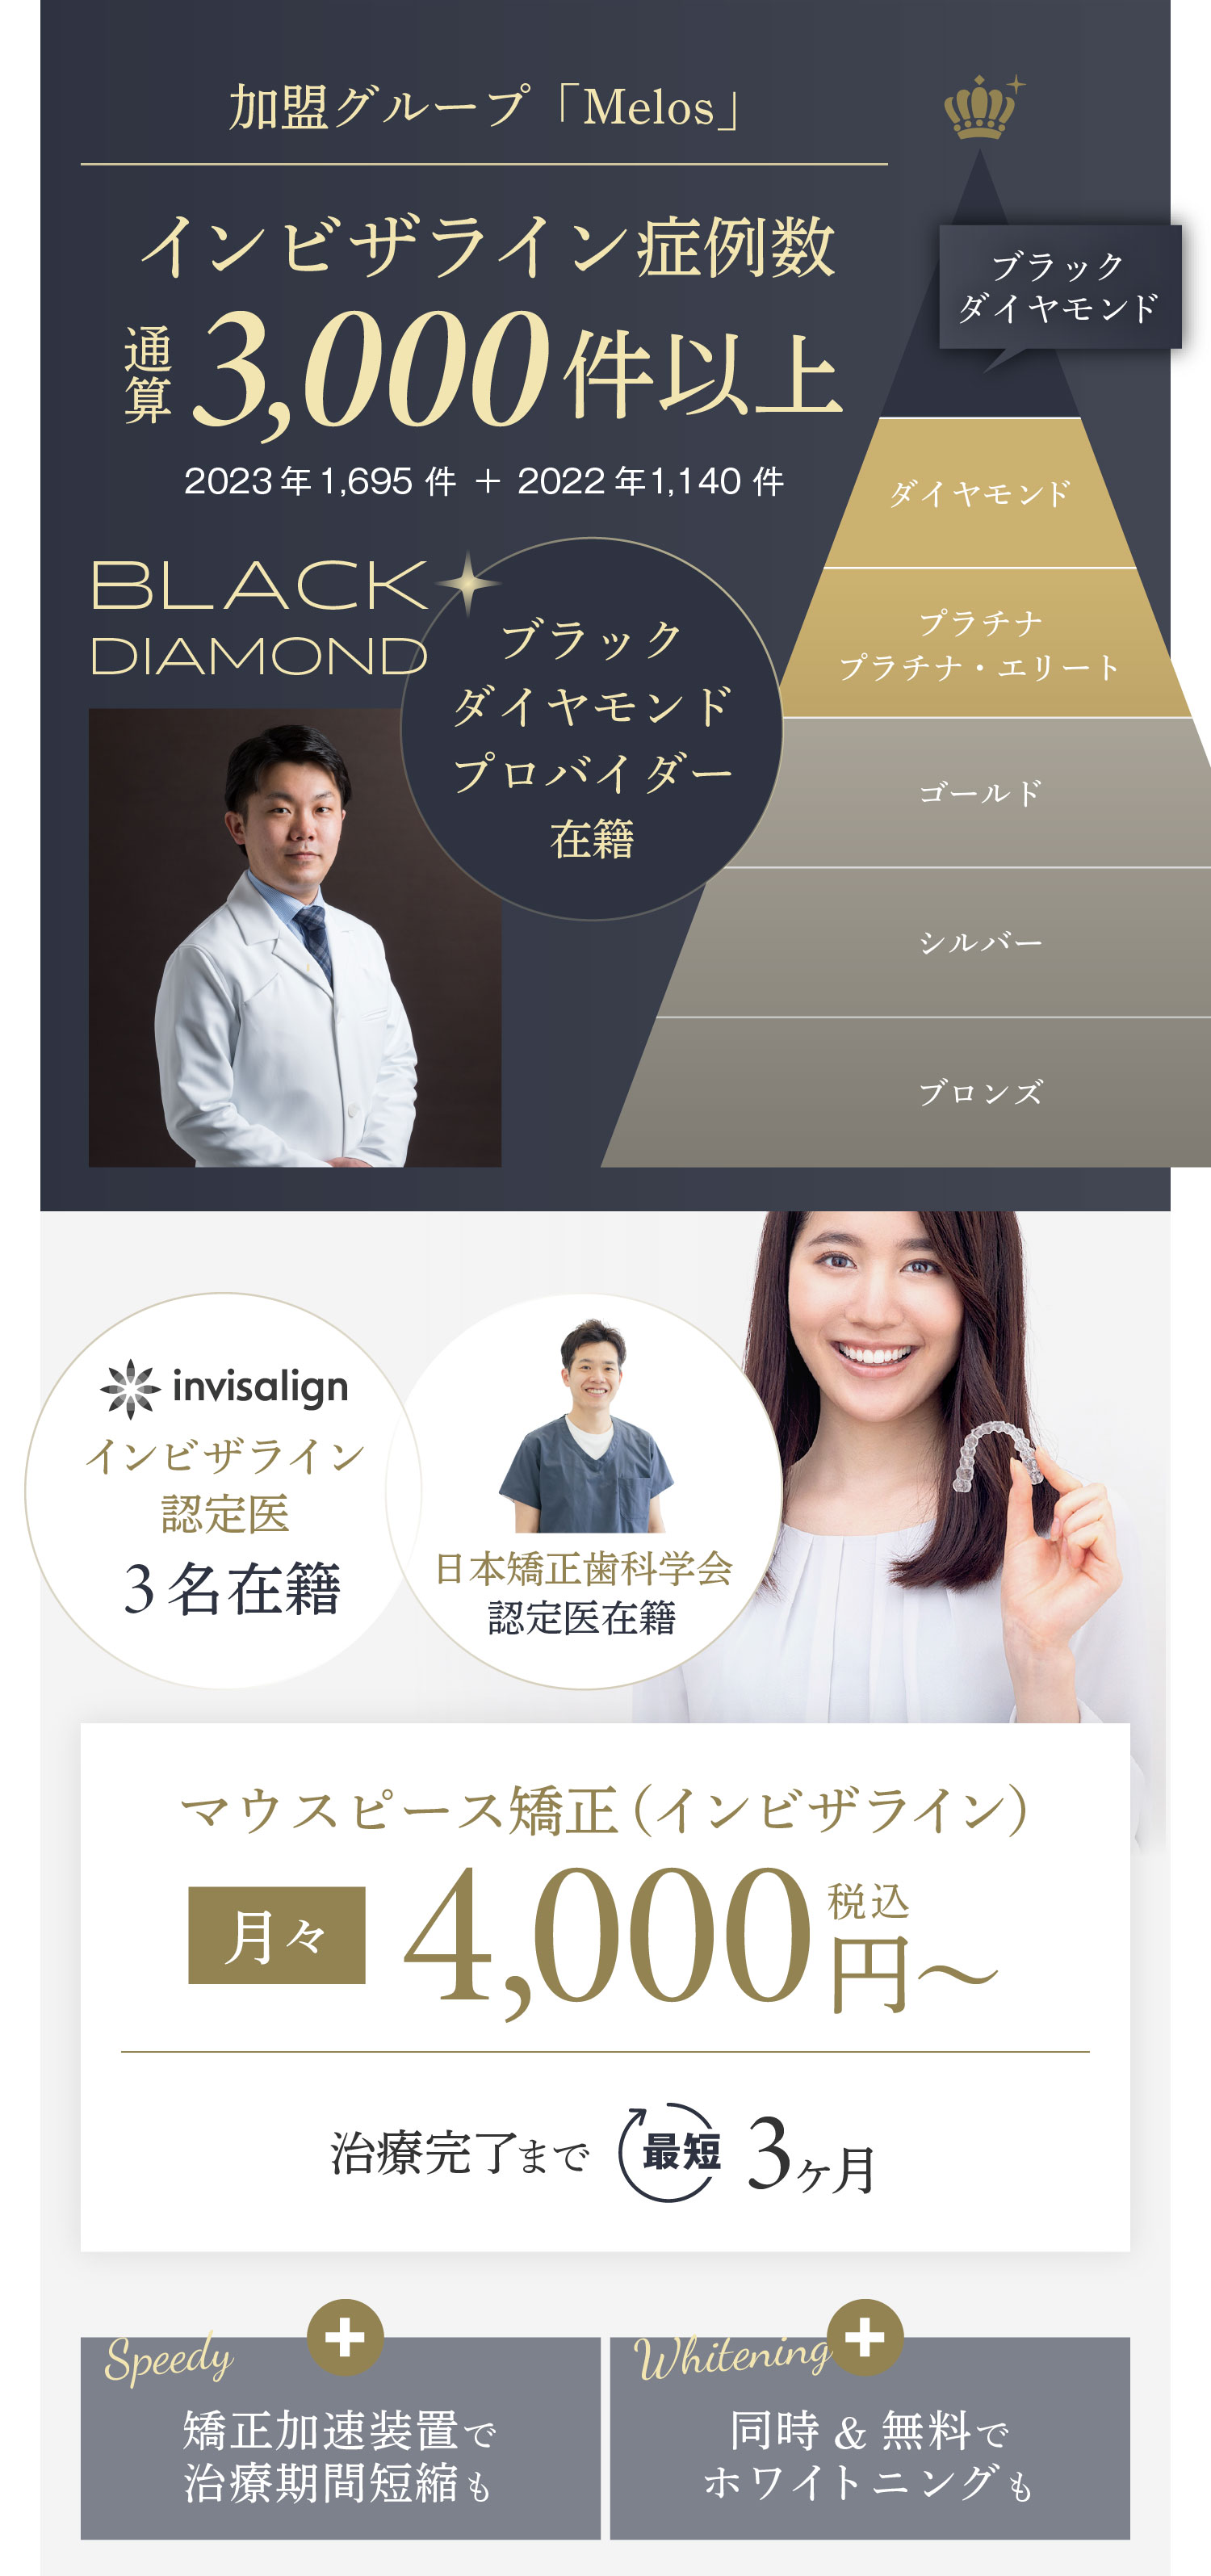 インビザライン認定医 3名在籍、日本矯正歯科学会認定医在籍、矯正加速装置で治療期間短縮も、同時&無料でホワイトニングも